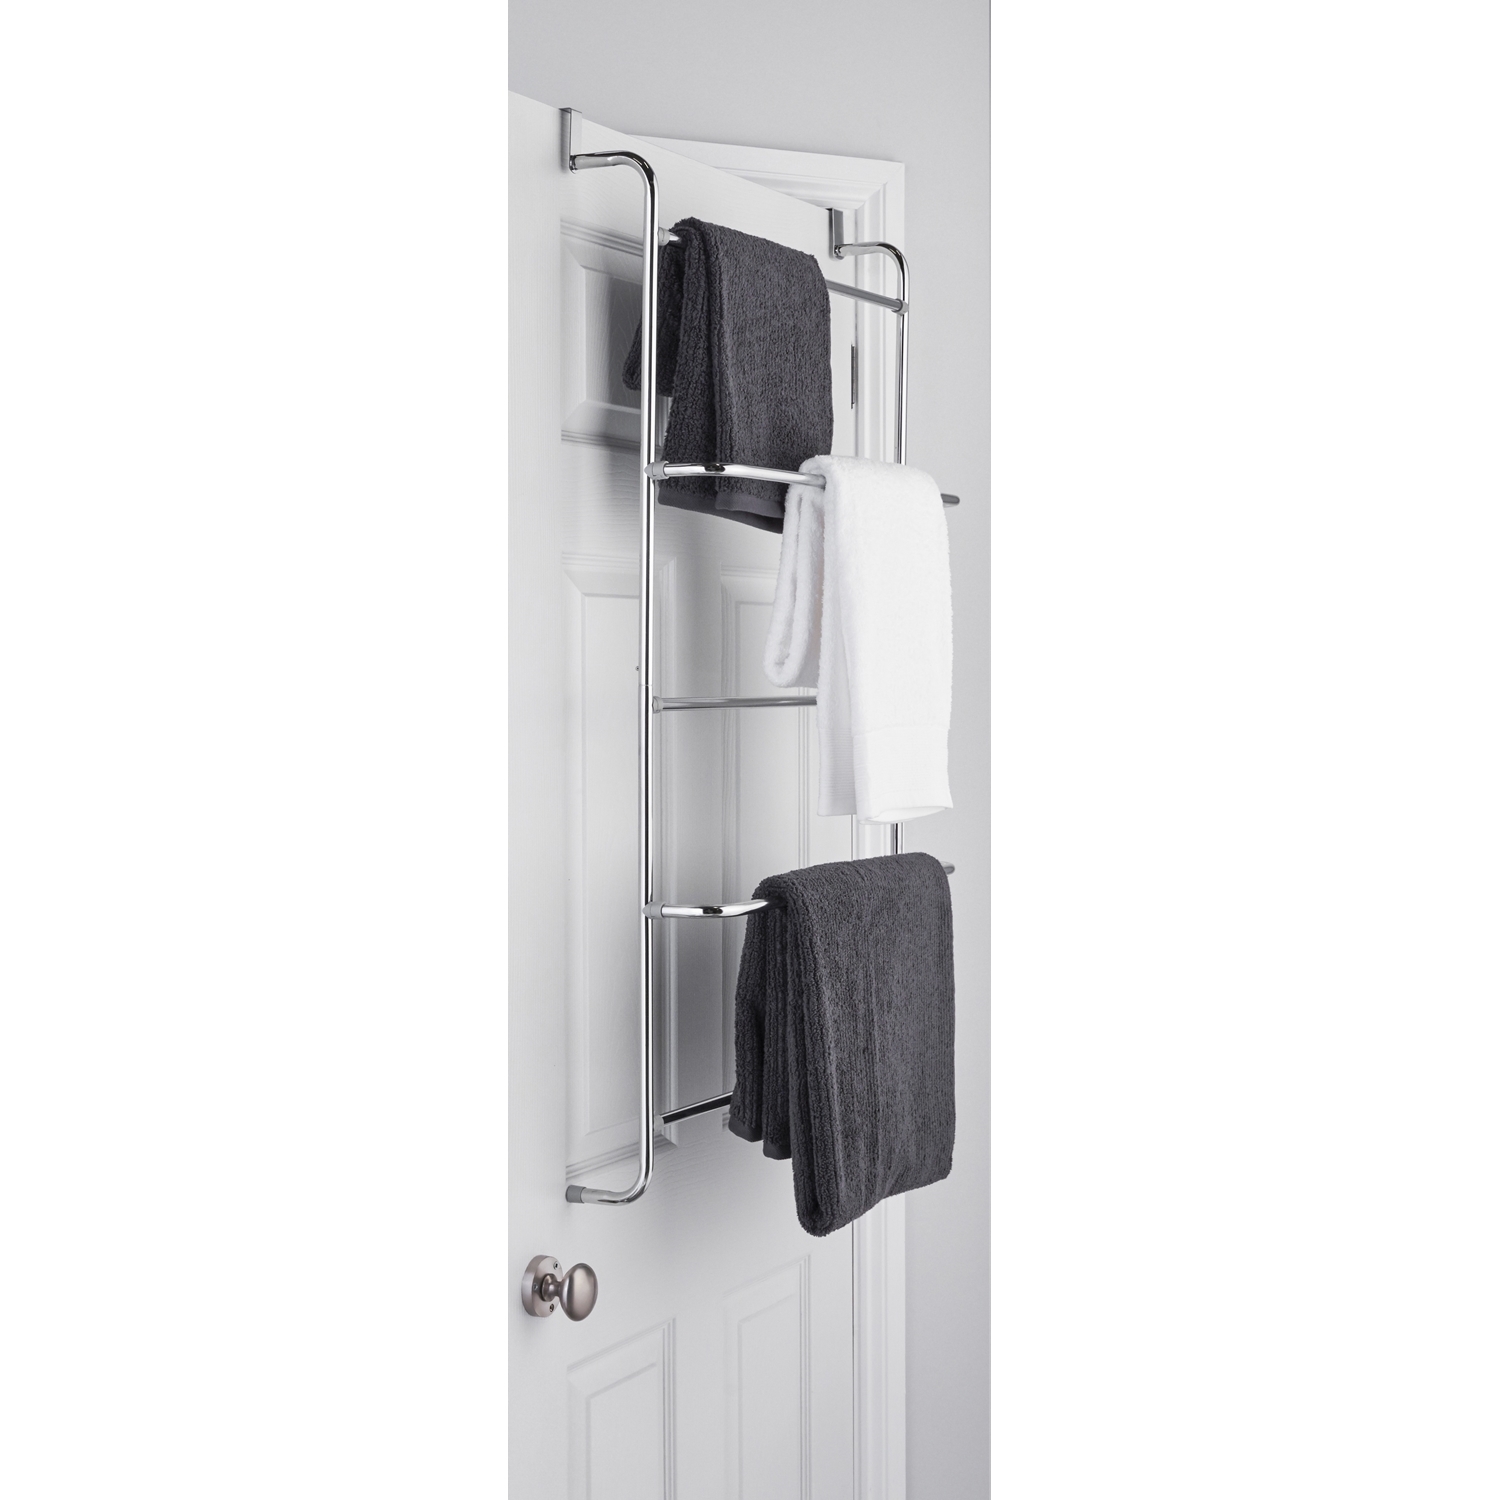 Silver Over the Door Towel Rack Image 2